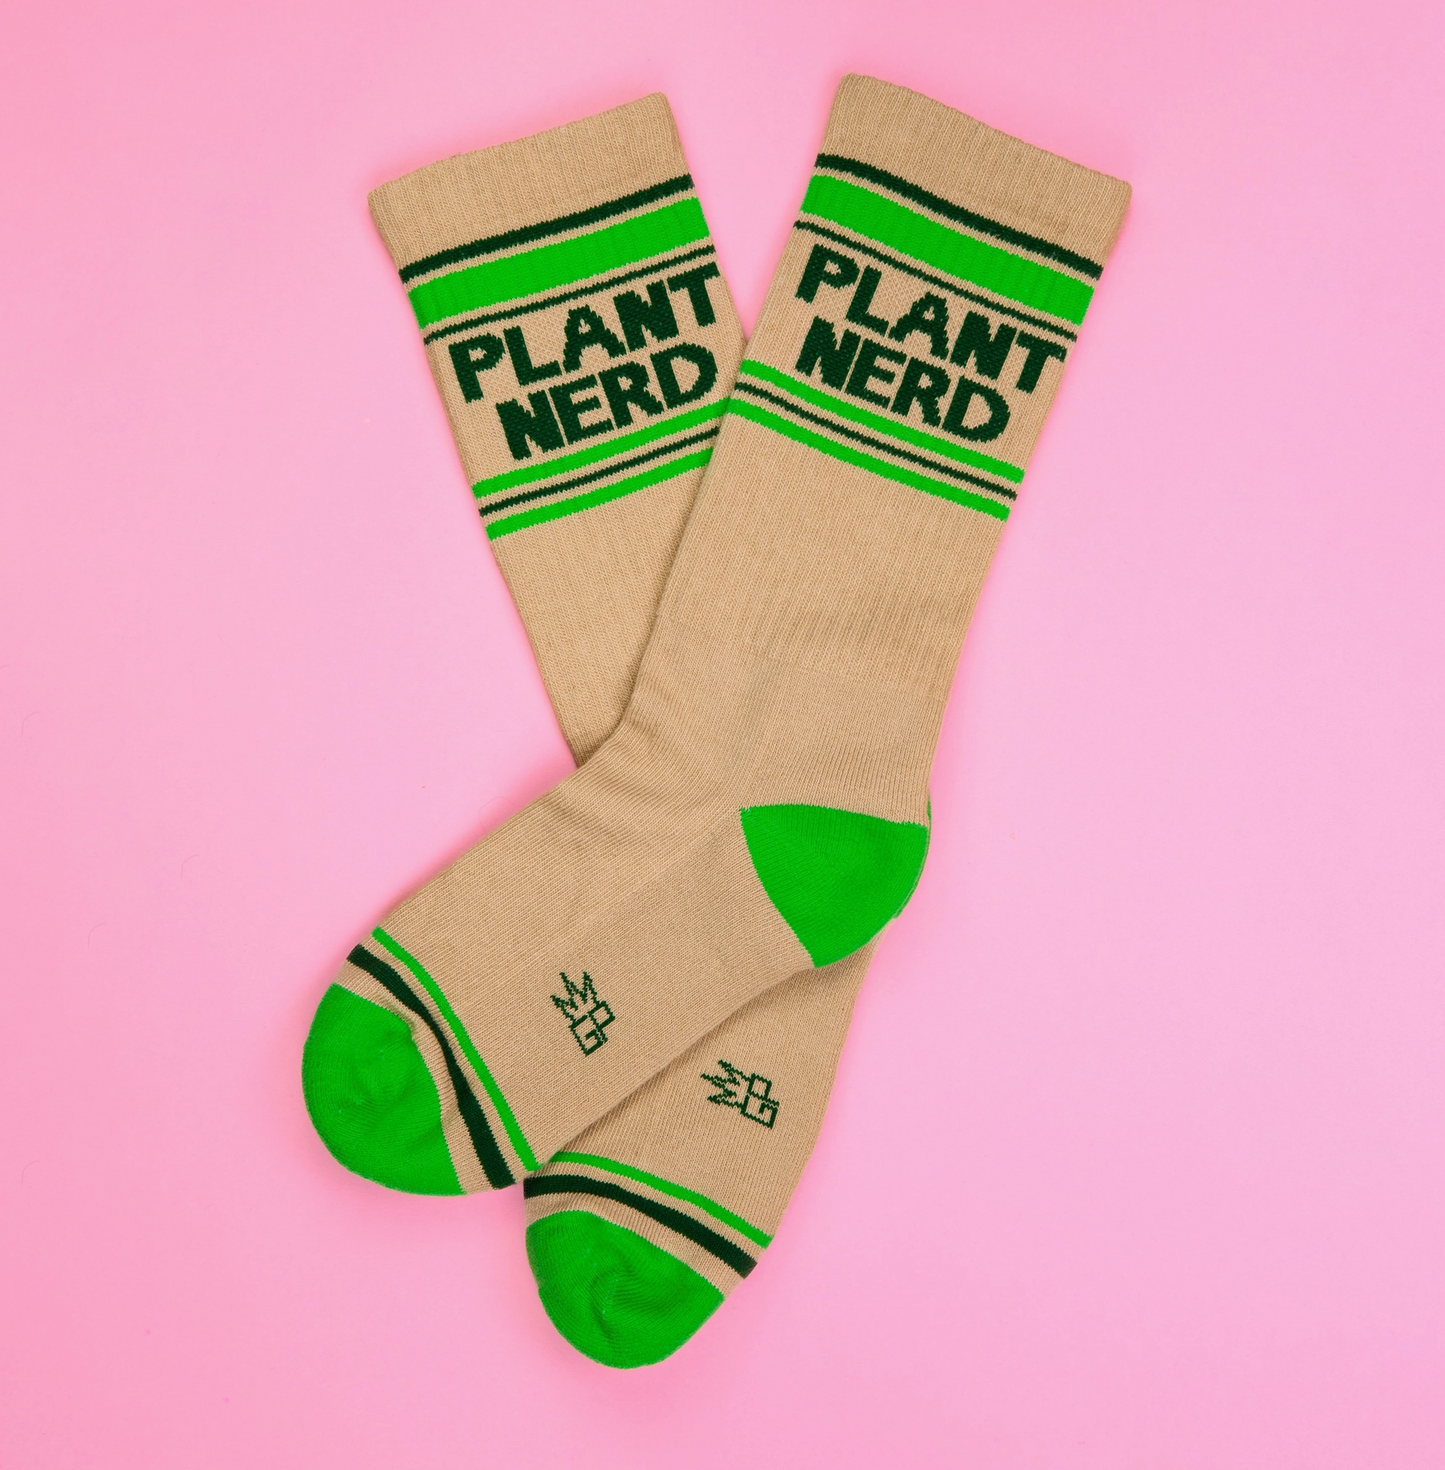 Plant Nerd Socks